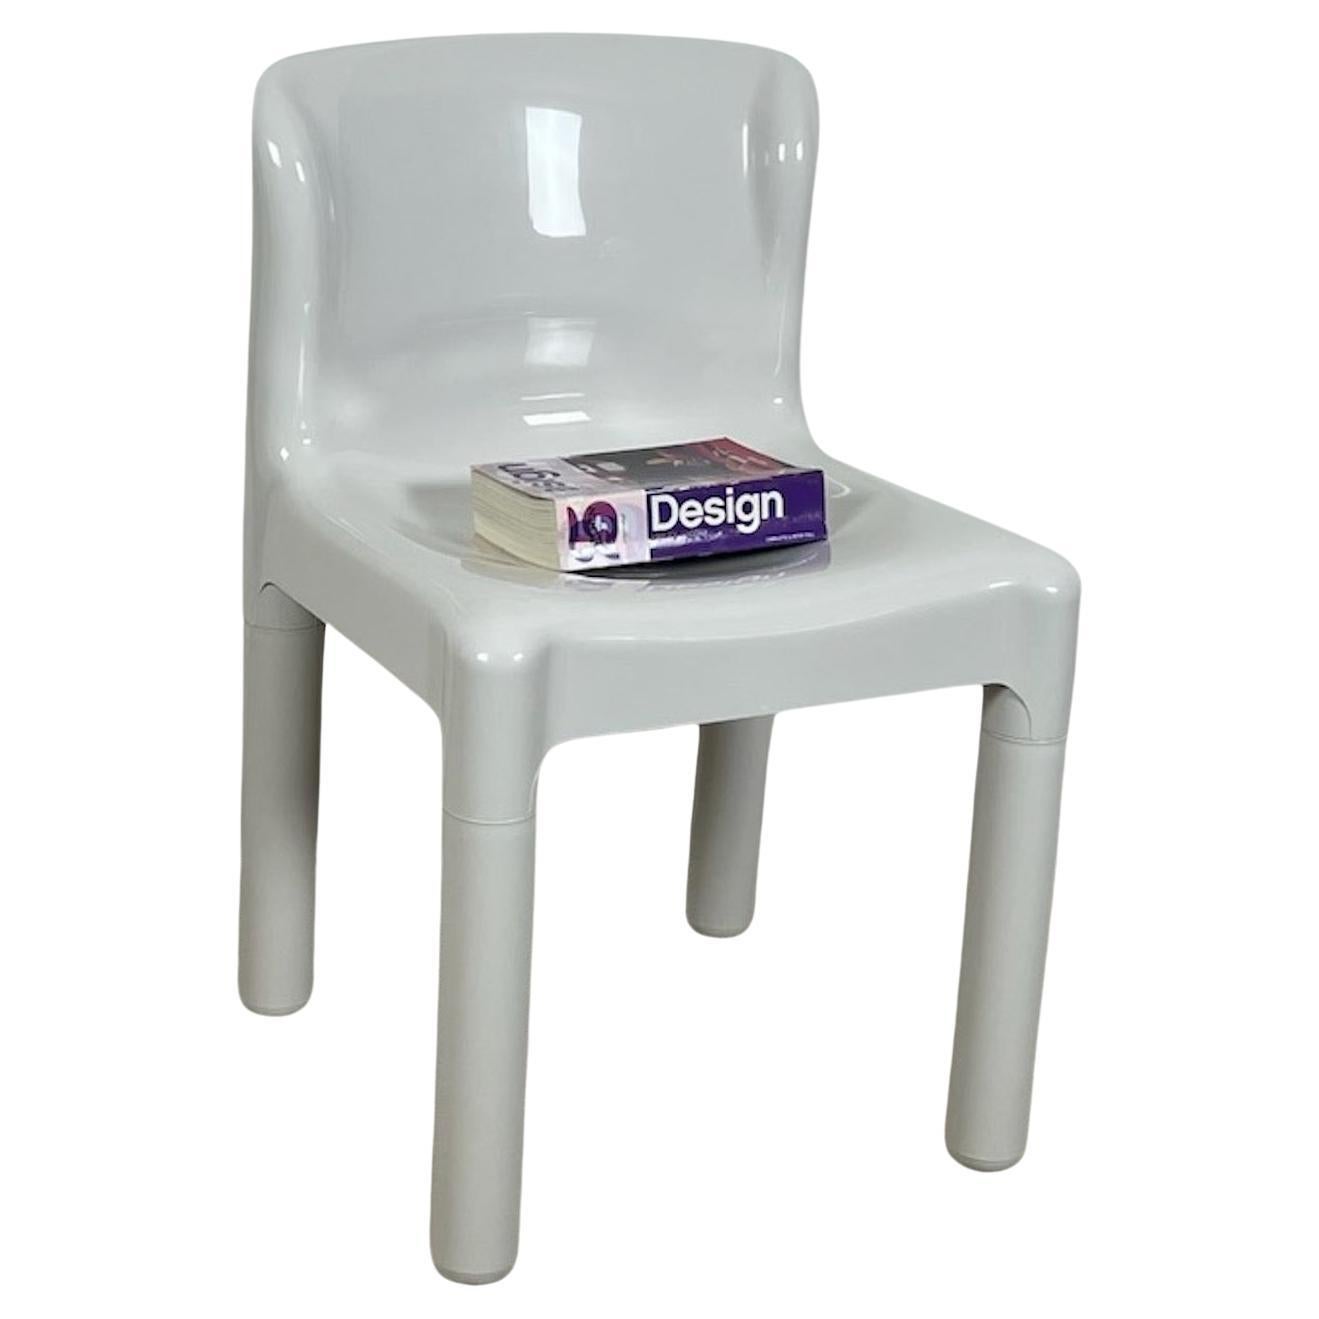 Das Modell 4875 ist der erste Stuhl der Welt, der aus spritzgegossenem Polypropylen hergestellt wird. Carlo Bartoli entwarf ihn 1970, Kartell begann 1974 mit der Produktion, und der Stuhl wurde aufgrund seines innovativen Designs und der Qualität